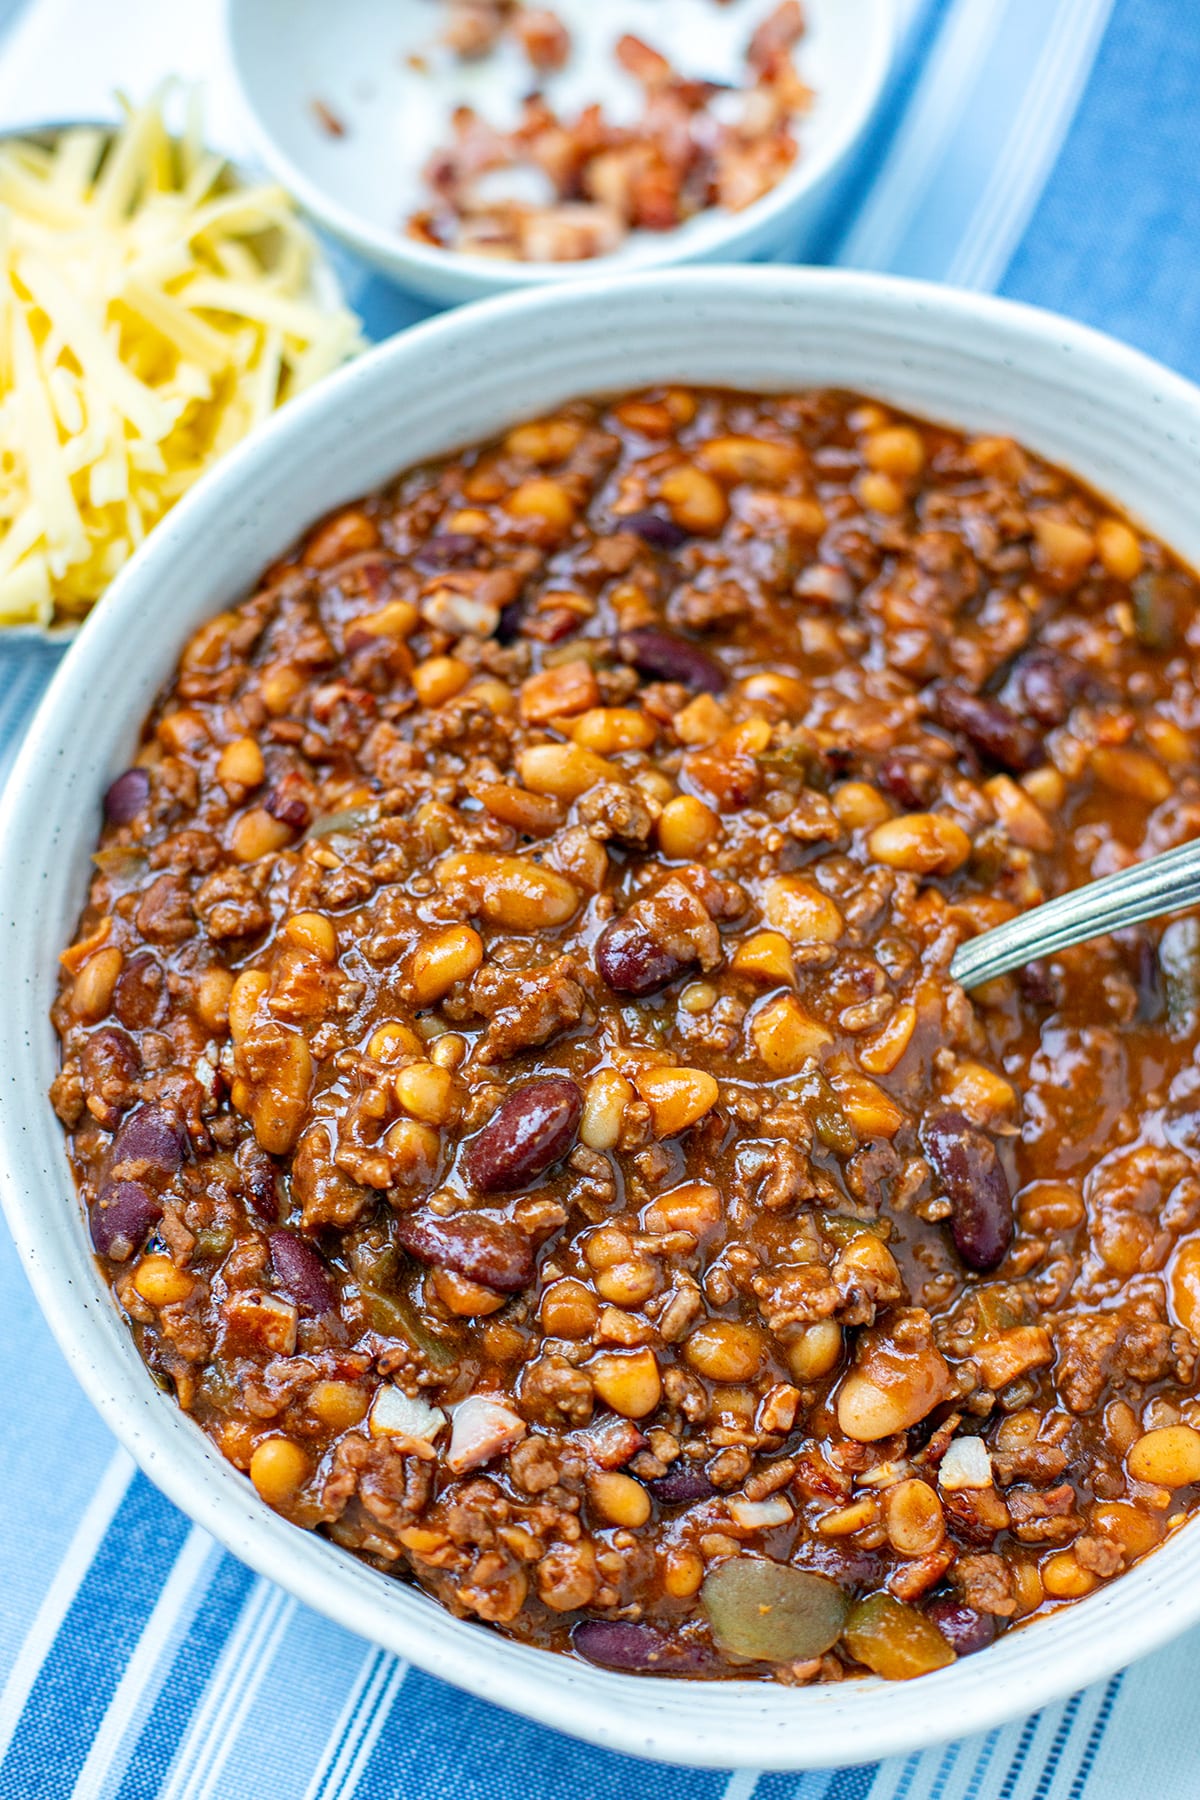 Instant Pot Cowboy Beans Recipe (Calico Beans)